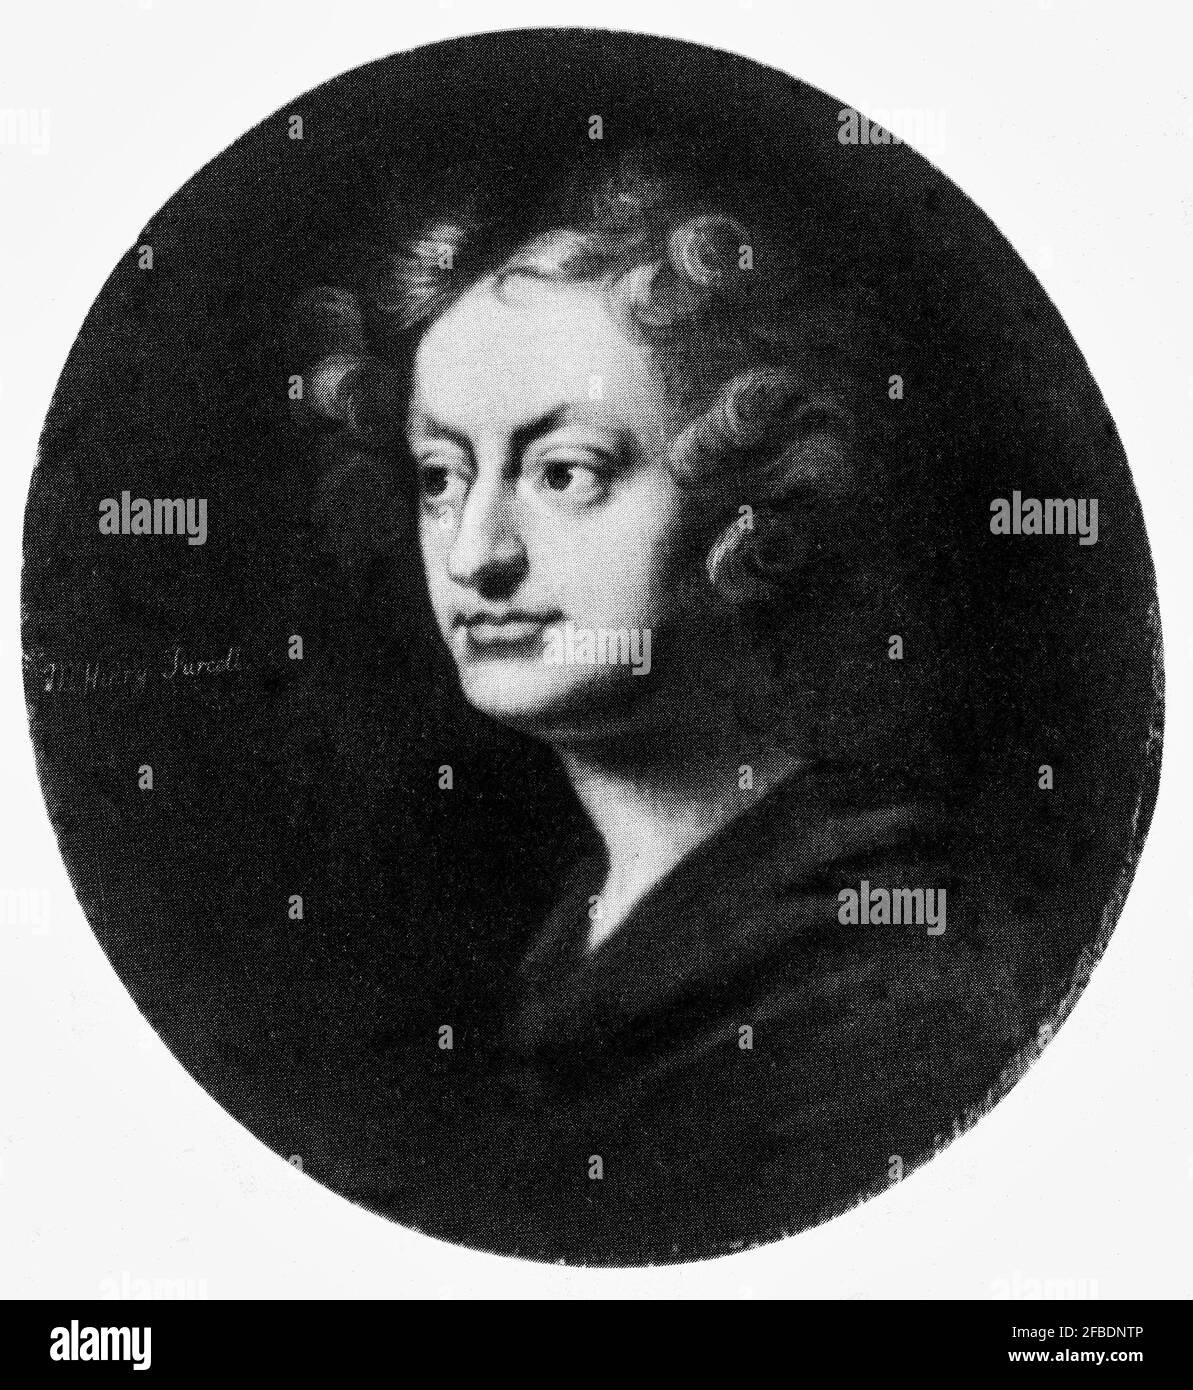 Henry Purcell (1659-1695) è stato un compositore inglese che ha incorporato elementi stilistici italiani e francesi, per creare una forma unica inglese di musica barocca. È generalmente considerato uno dei più grandi compositori inglesi, il cui lavoro ha influenzato musicisti del XX e XXI secolo. Foto Stock